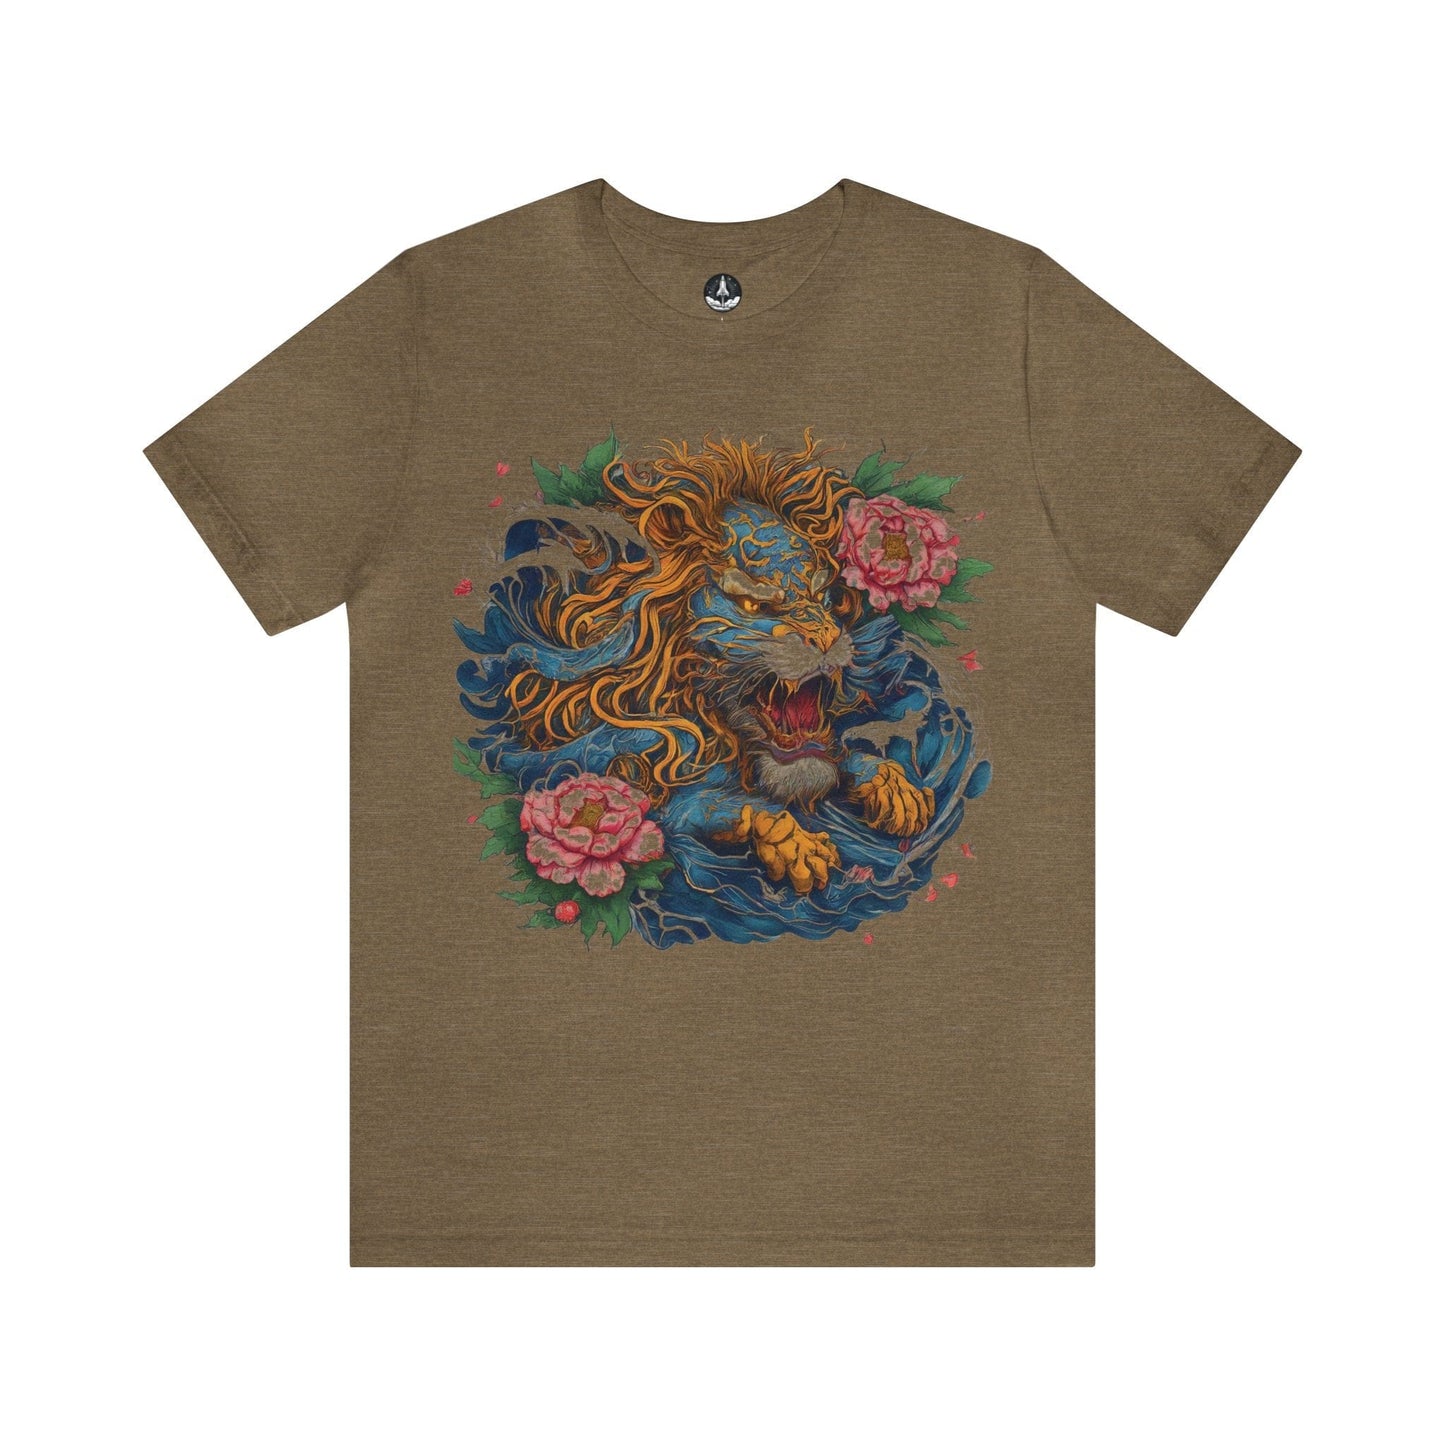 T-Shirt Heather Olive / S Japanese Irezumi Leo T-Shirt